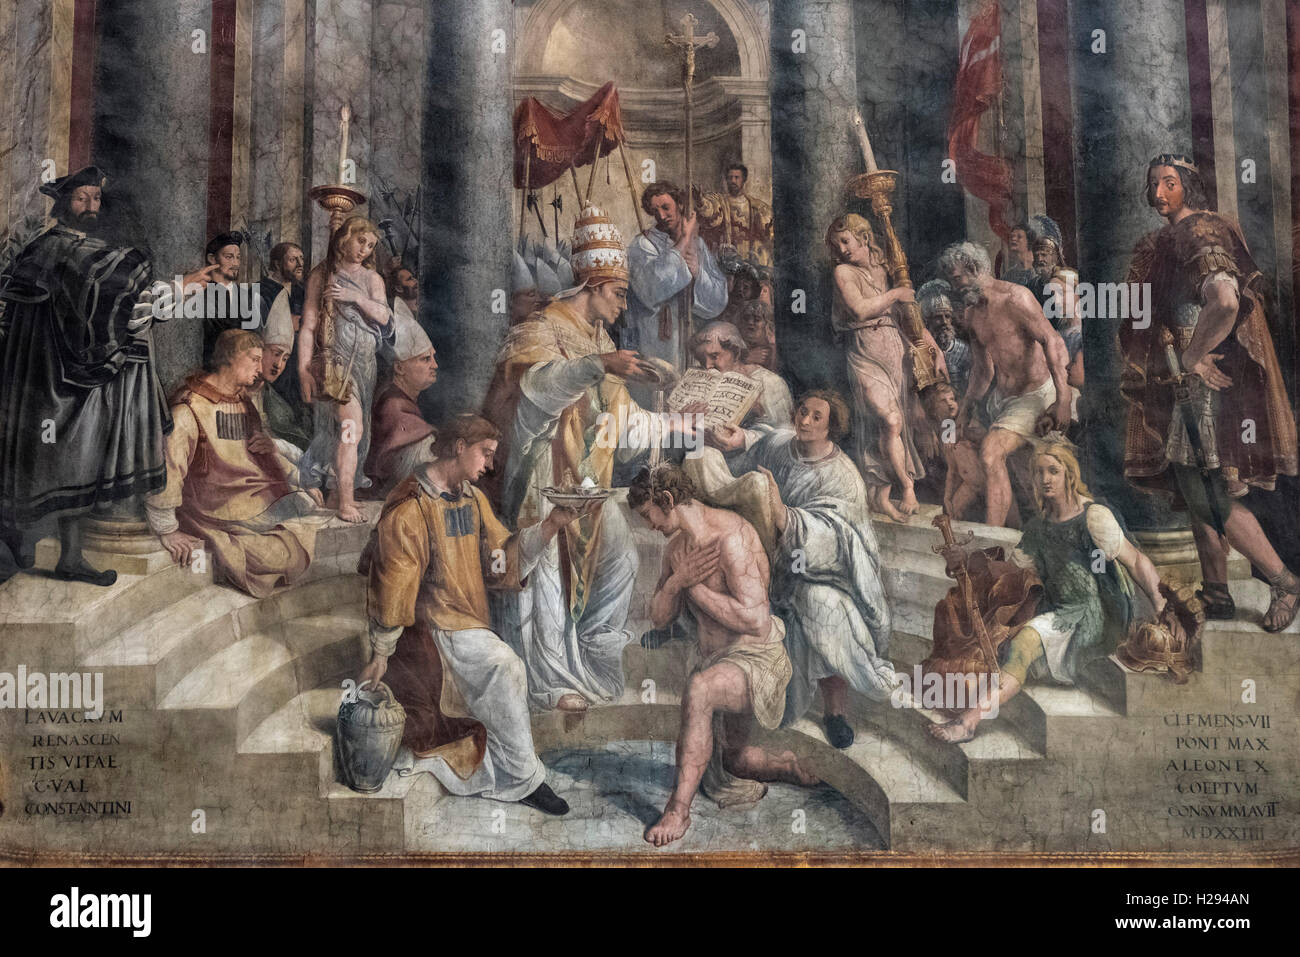 Roma. Italia. Fresco (1517-1524) representando el Bautismo de Constantino (detalle), Sala de Constantino, los Museos del Vaticano. Foto de stock